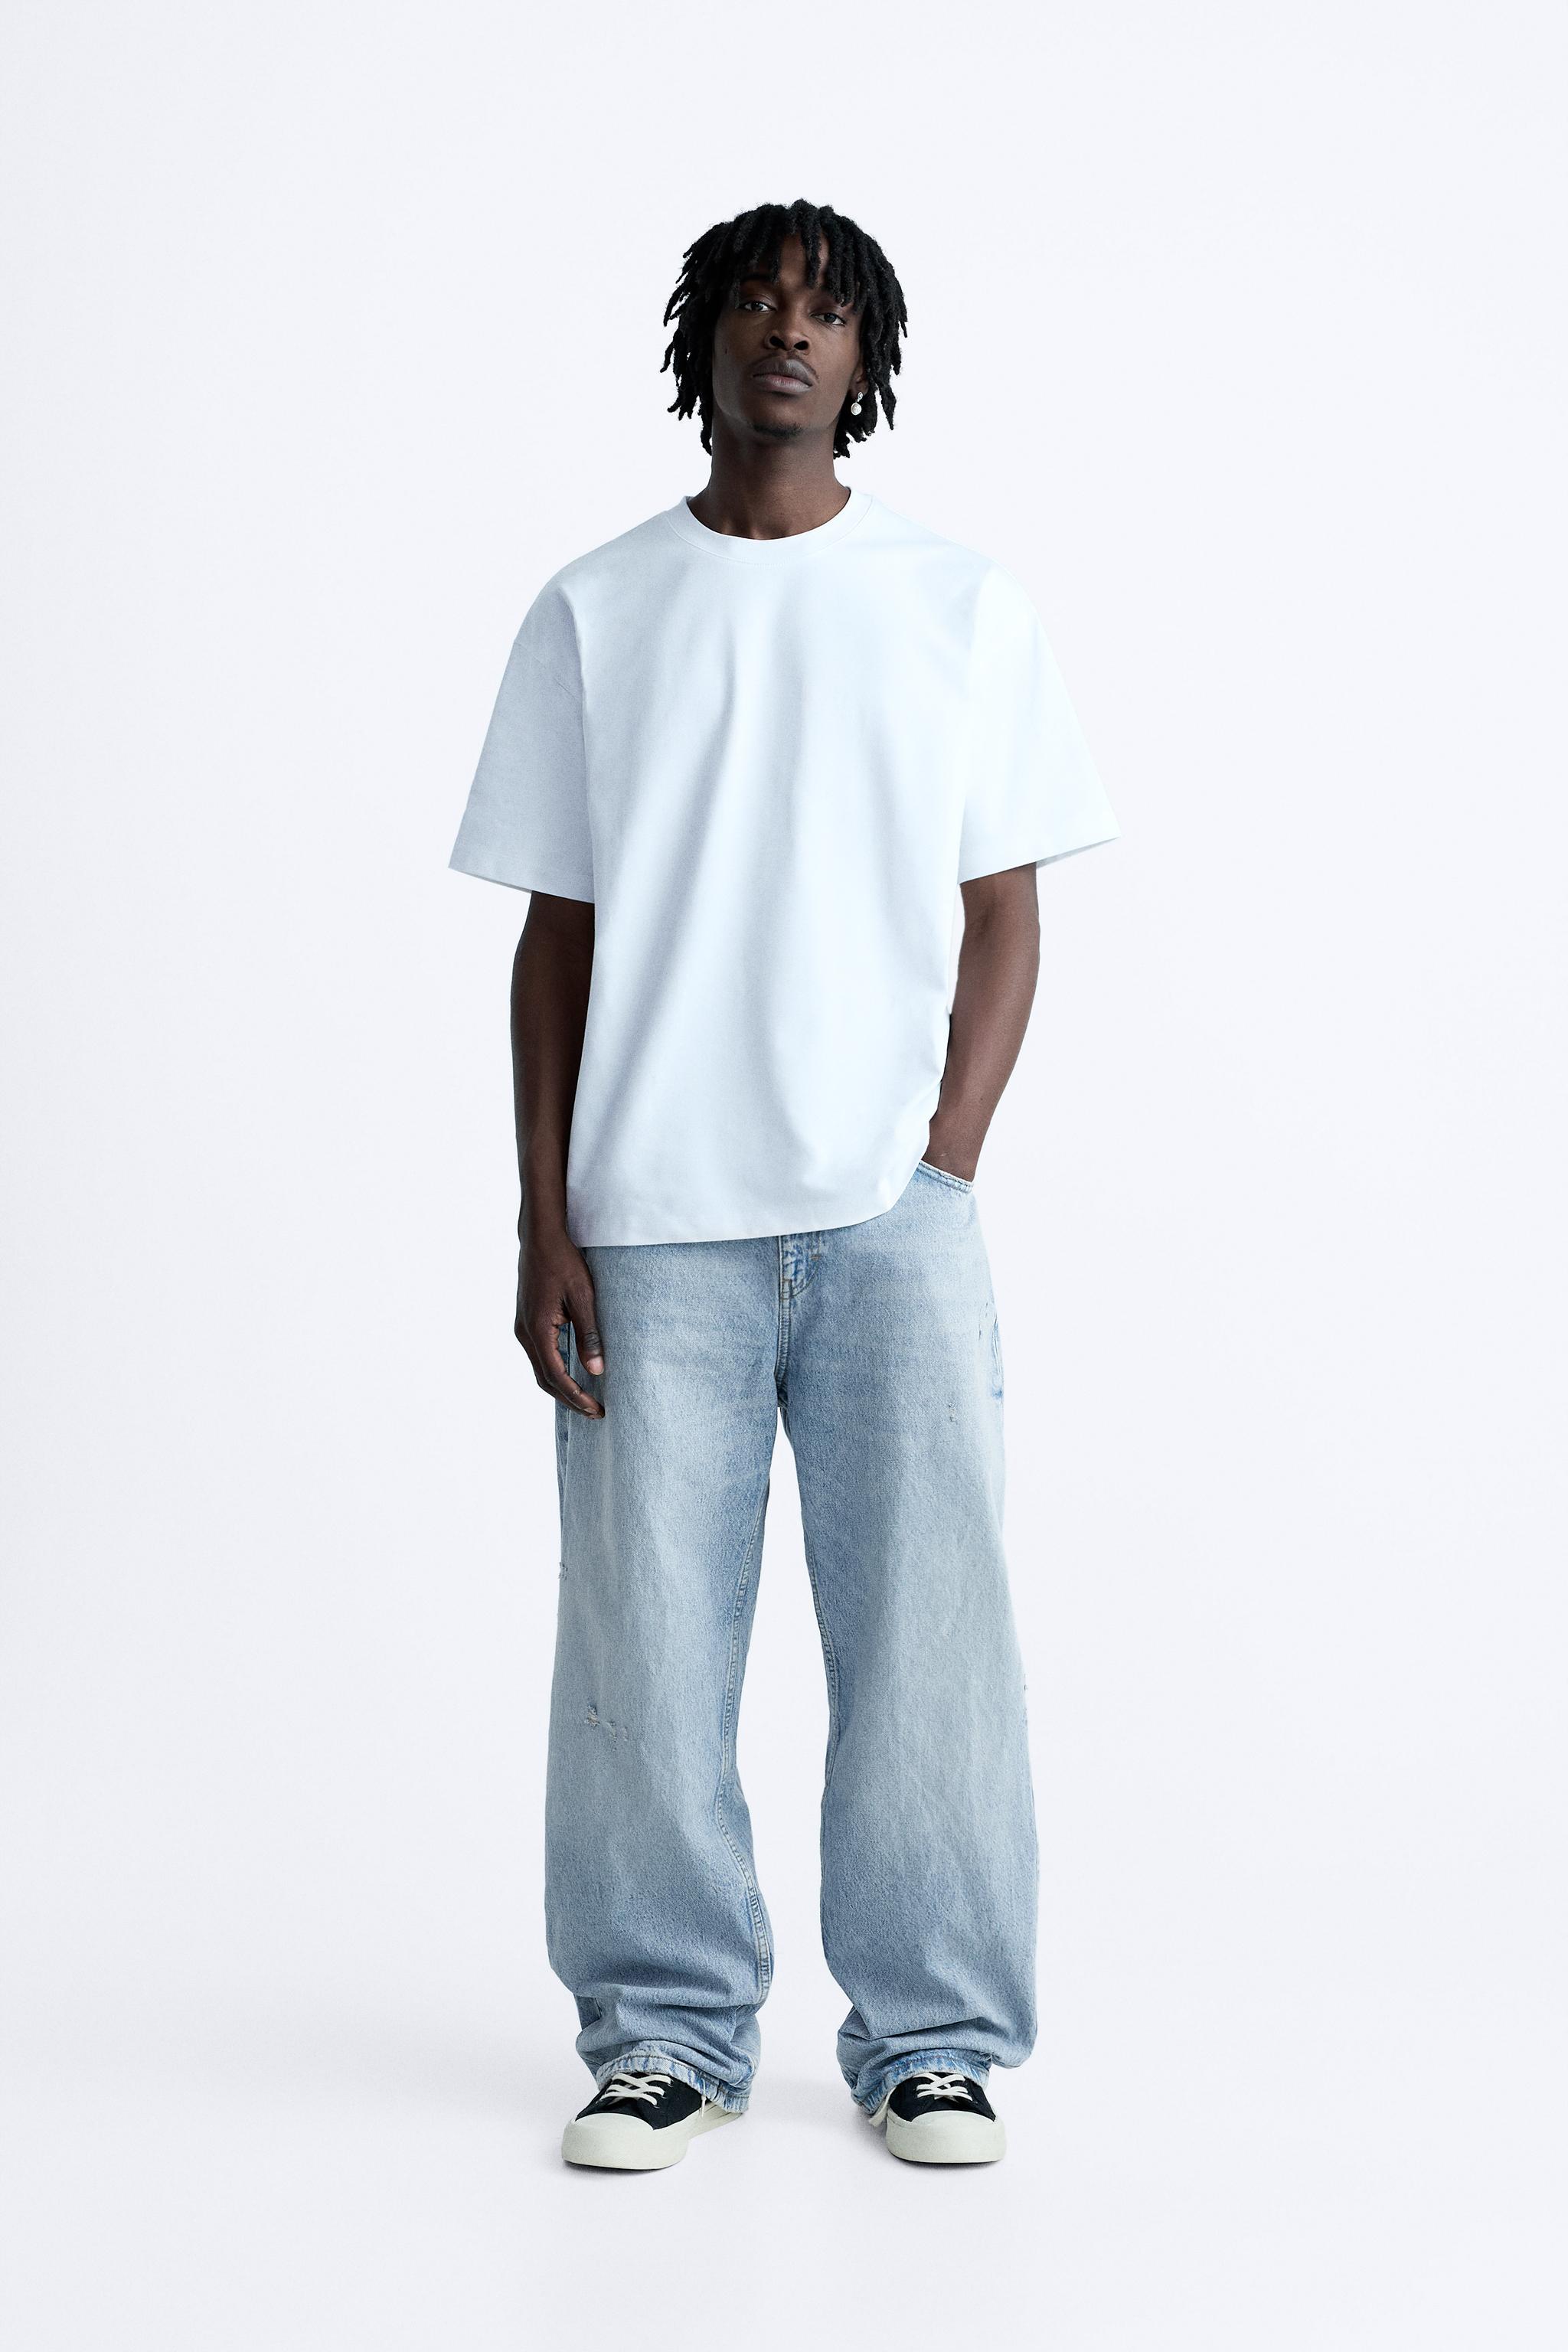 ZARA Baggy Jeans with Pockets Sz 2